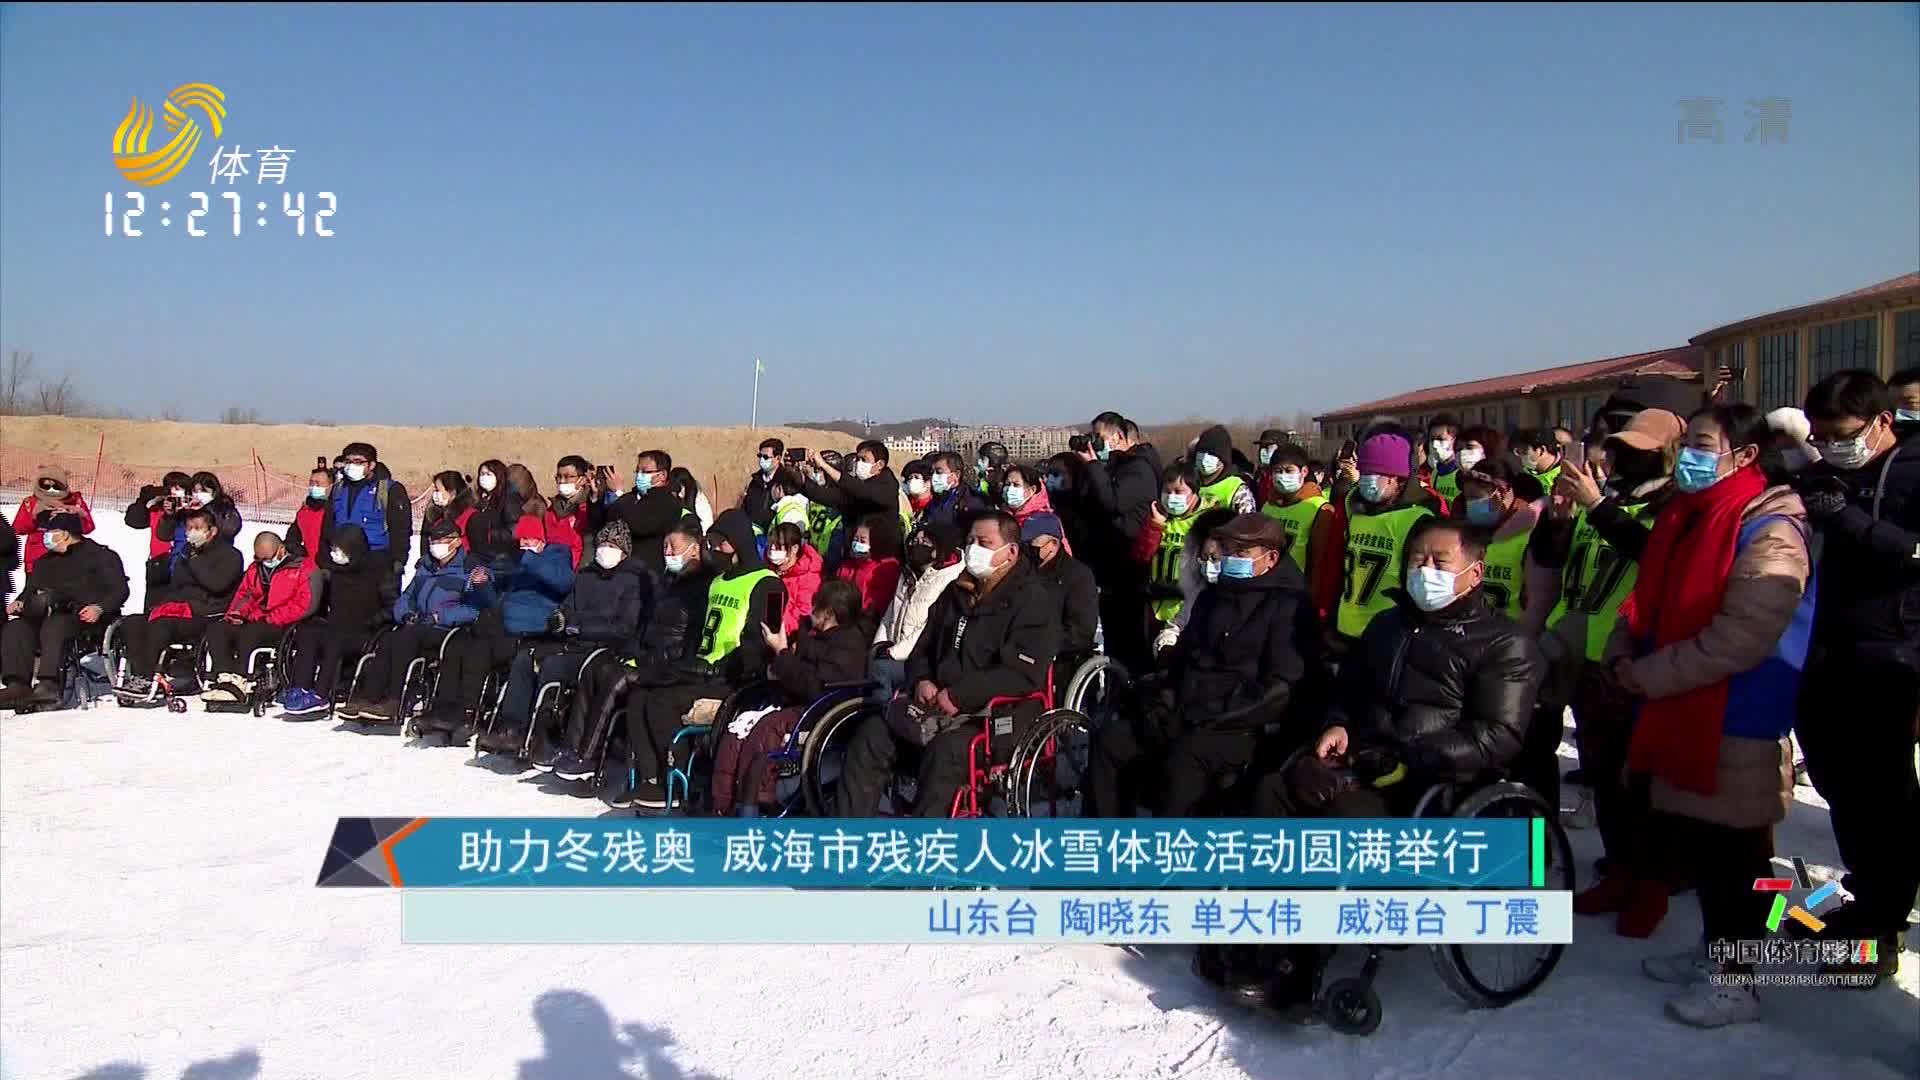 助力冬残奥 威海市残疾人冰雪体验活动圆满举行